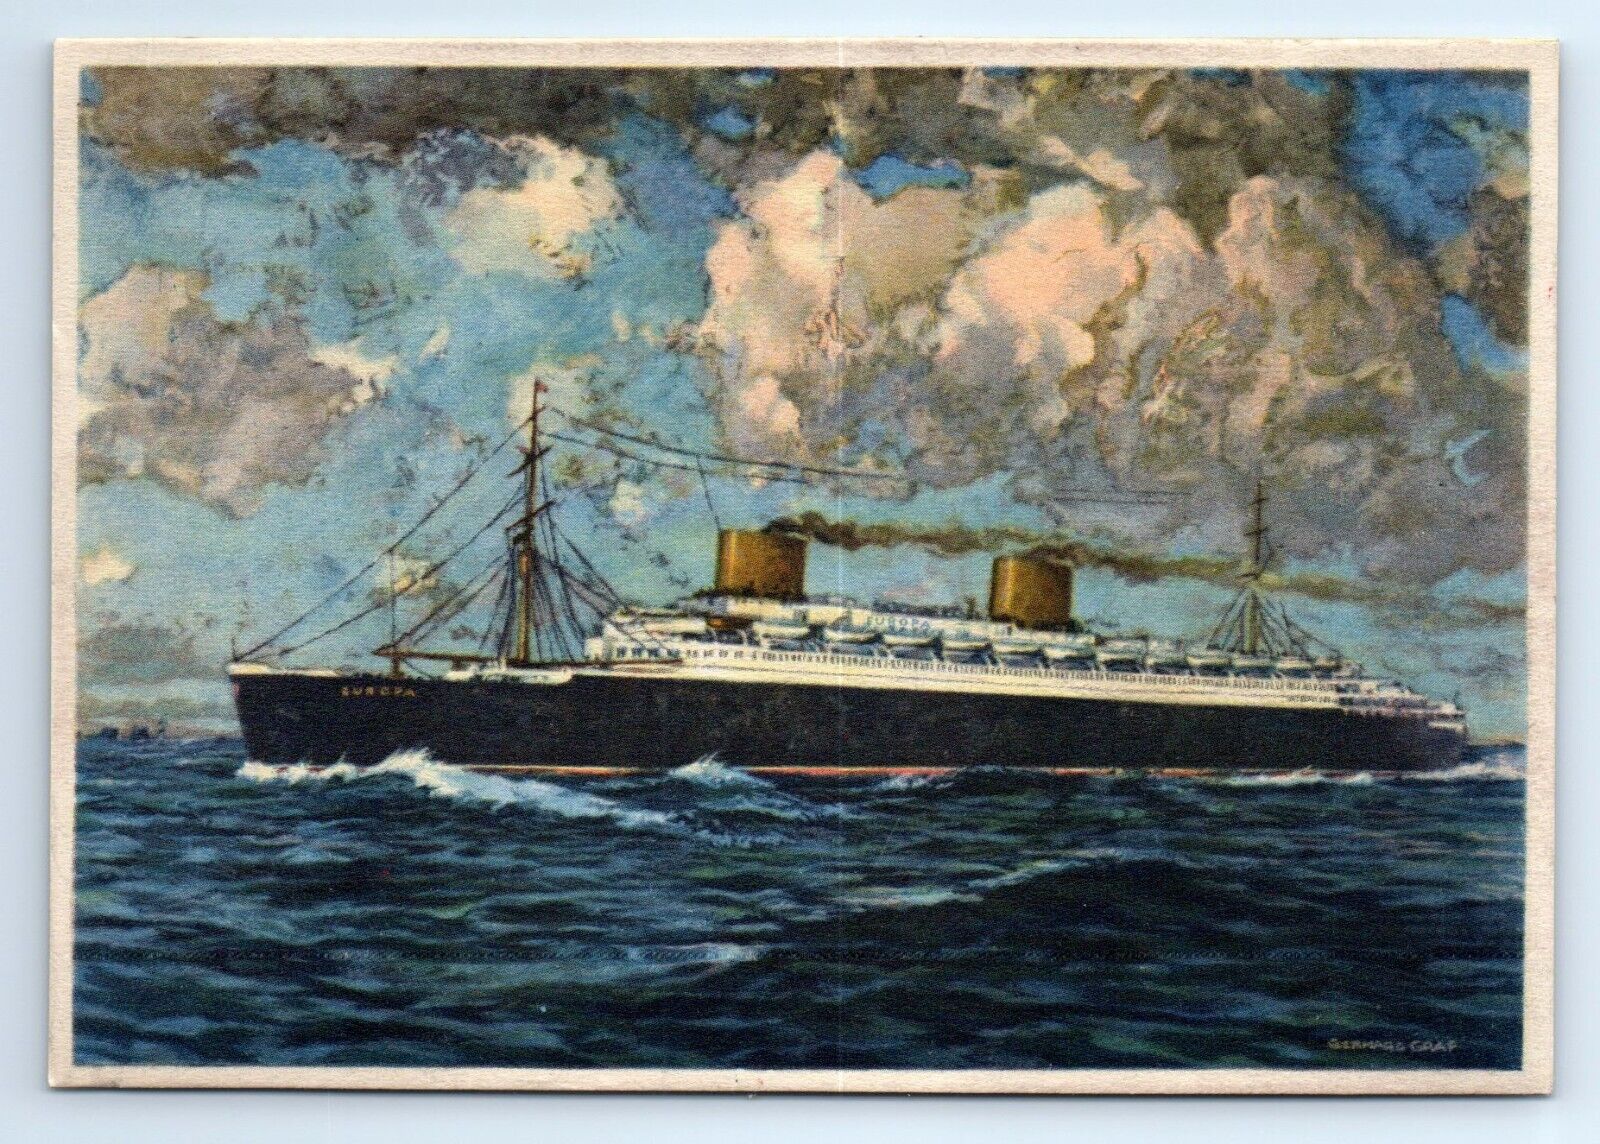 SS Europa Norddeutscher Lloyd Bremen Ocean Liner Postcard c.1940